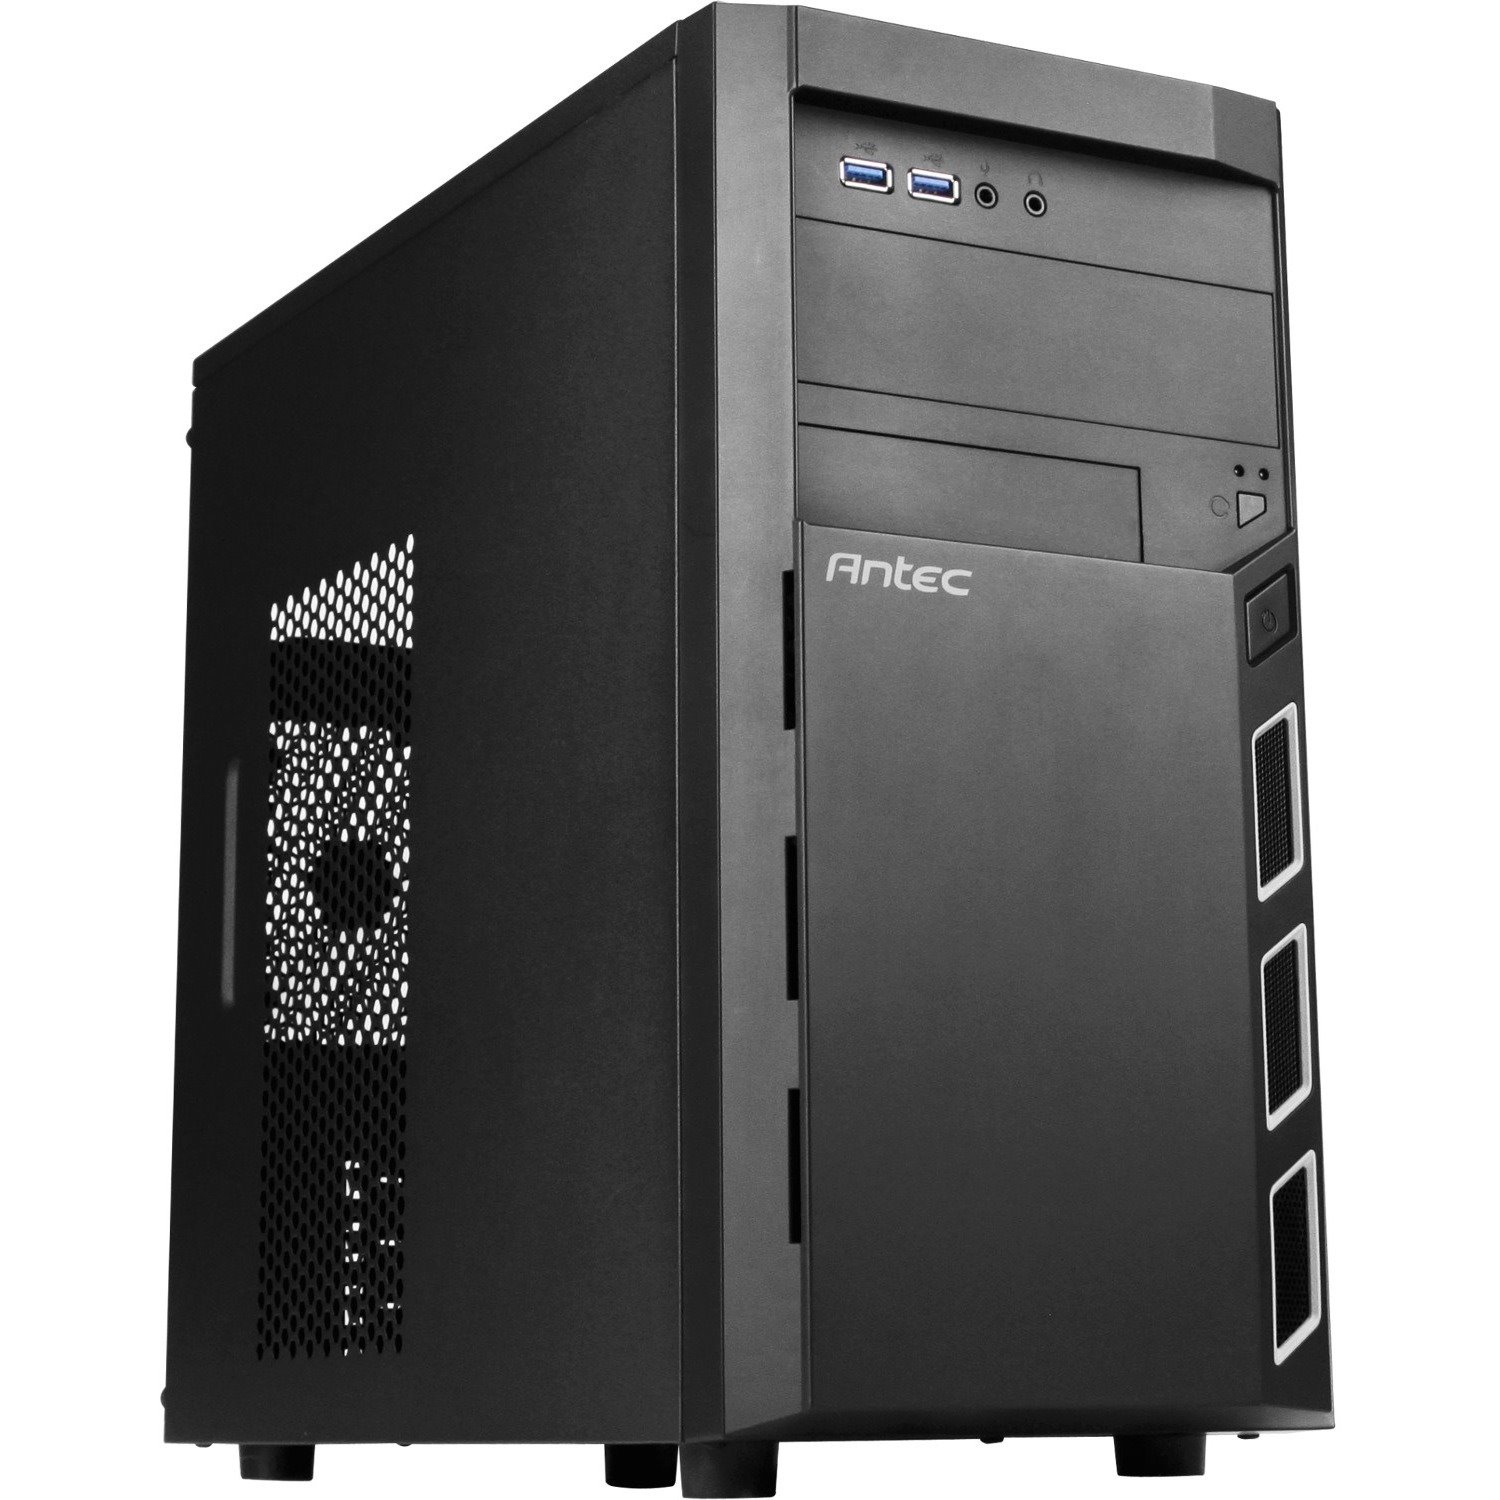 Antec VSK3000 Elite Computer Case